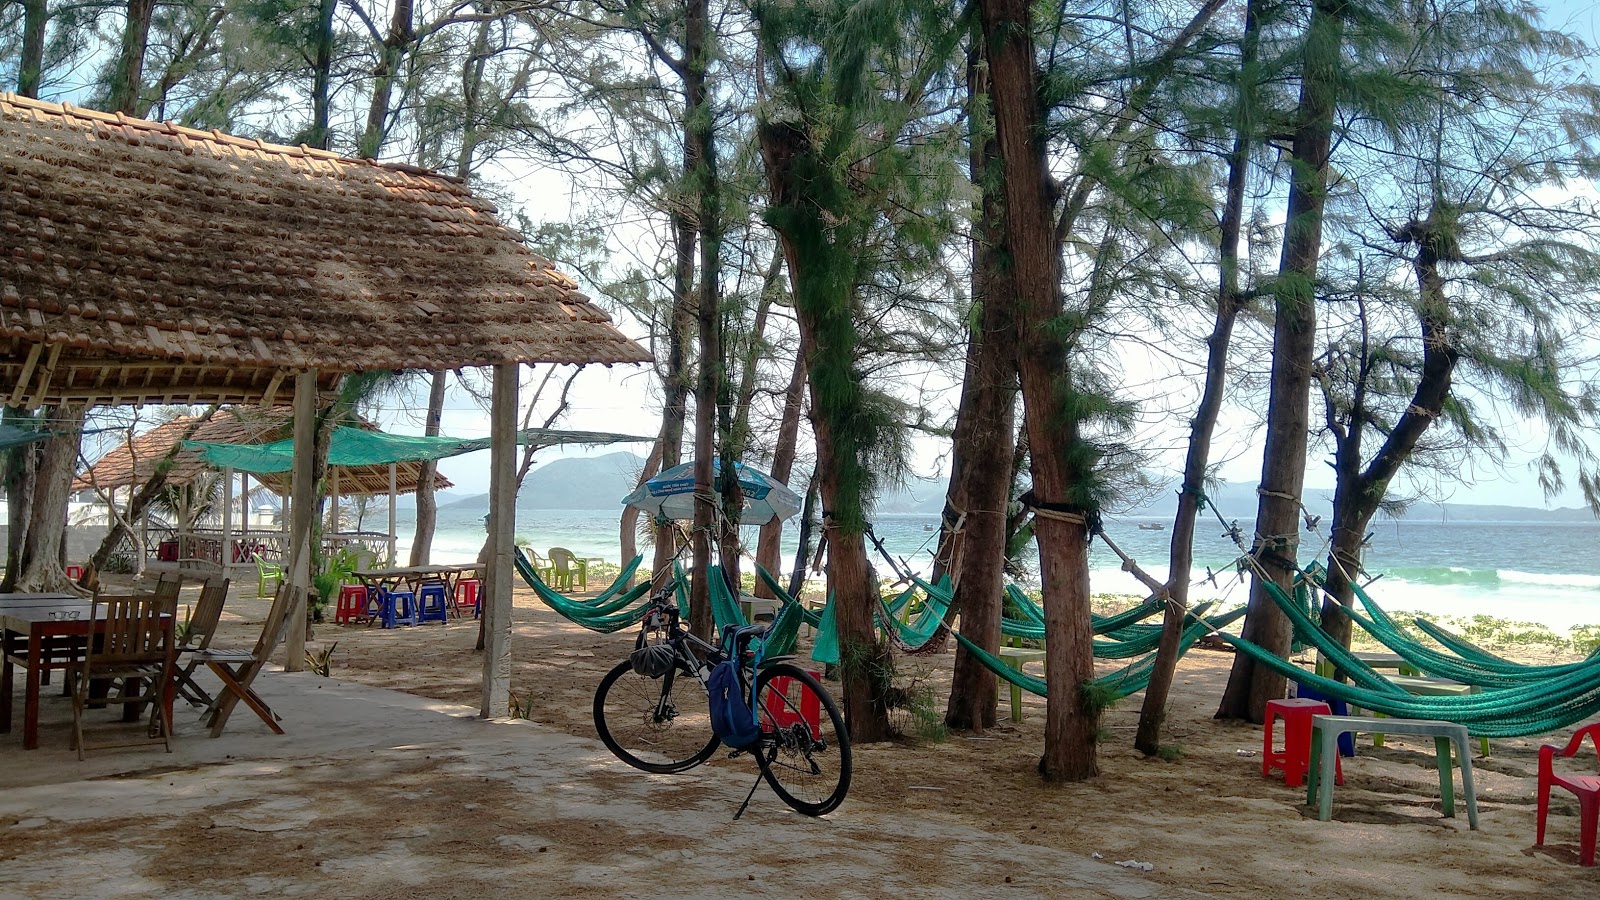 Φωτογραφία του Ganh Do Beach - δημοφιλές μέρος μεταξύ λάτρεις της χαλάρωσης